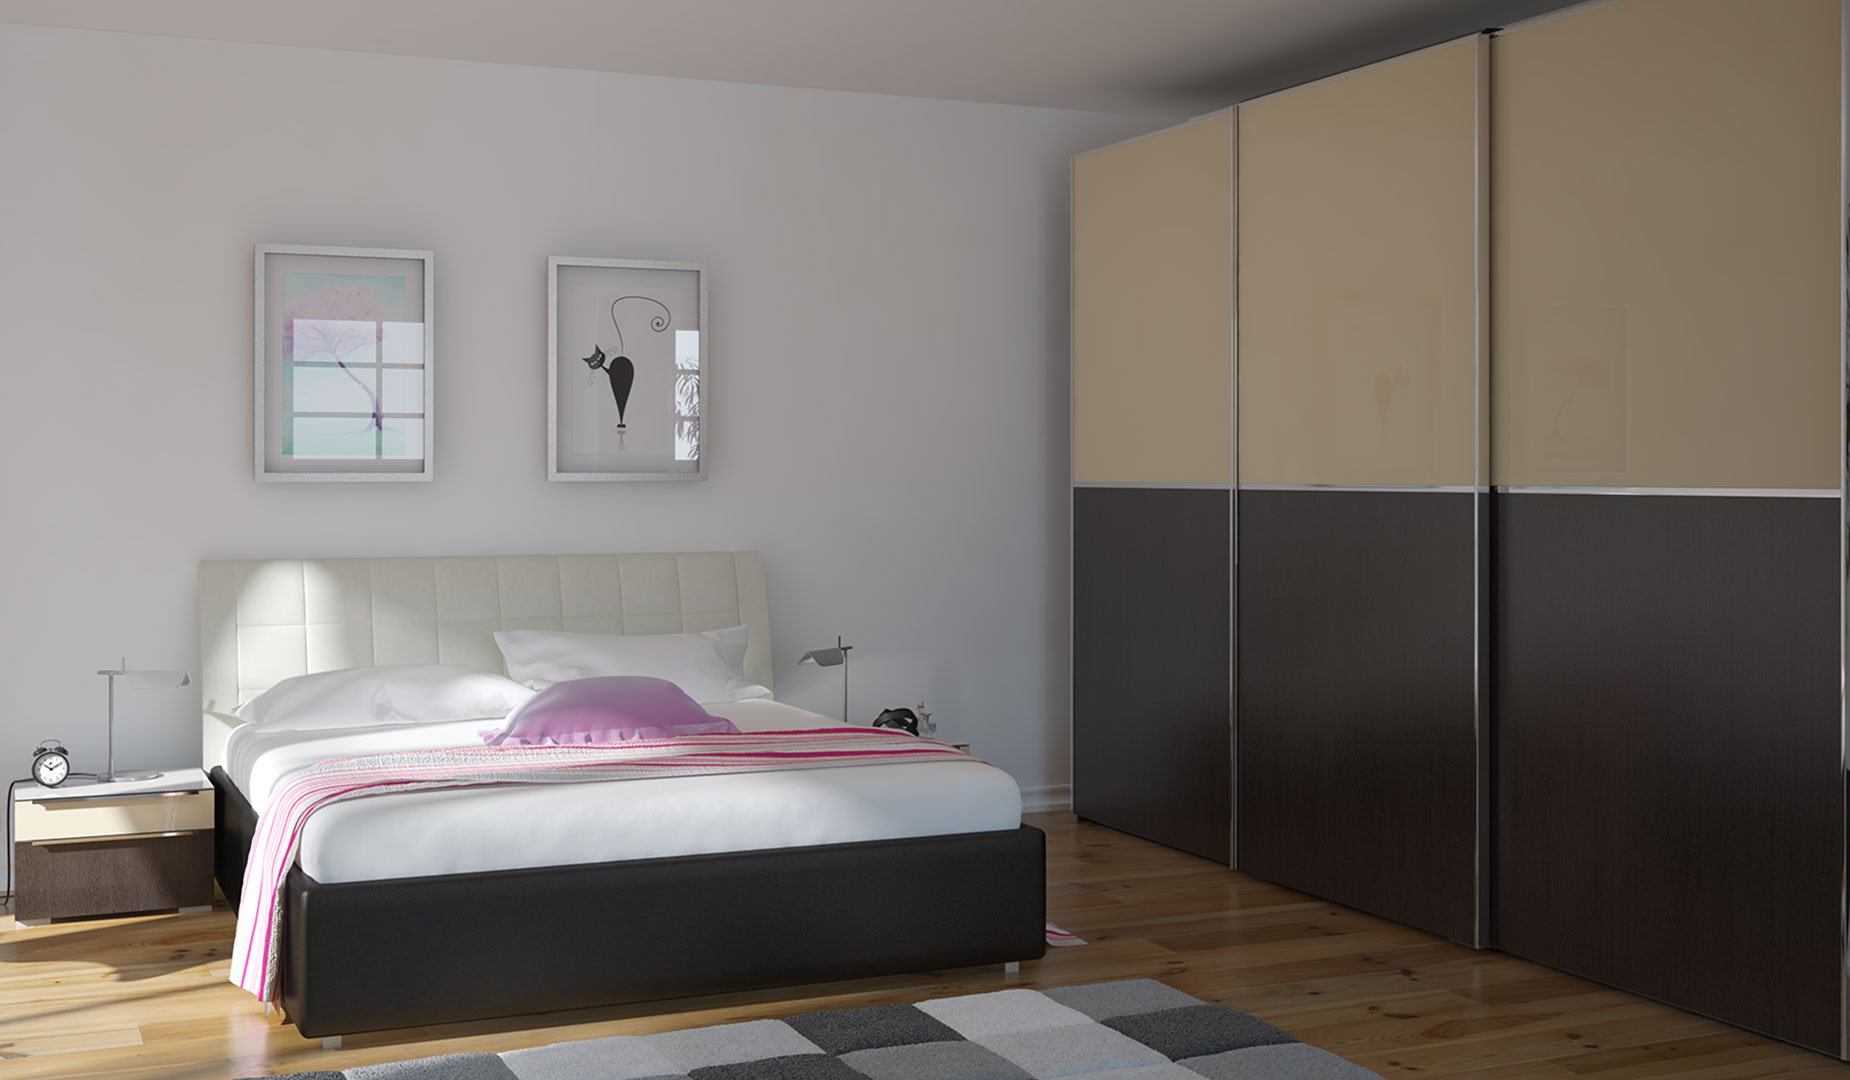 Мебель для Спальная BEDDALI32 - Rioka MEBEL